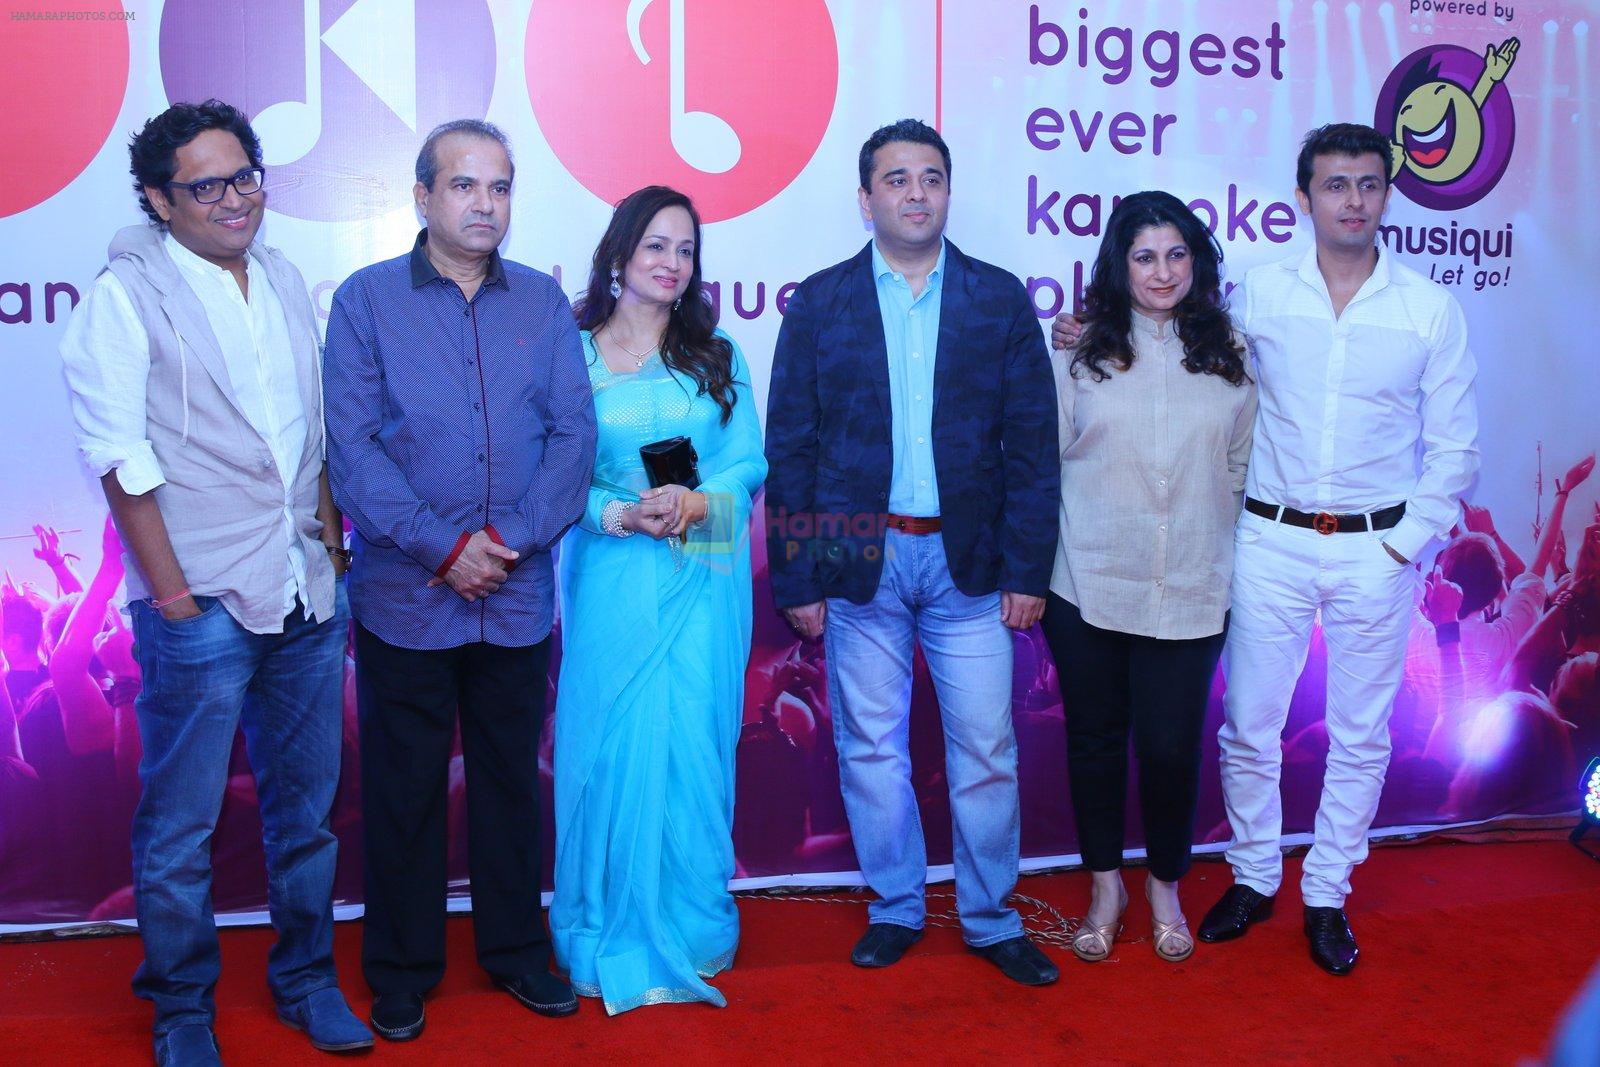 Sonu Nigam, Suresh Wadkar, Shamir Tandon, Smita Thackeray  at IKL launch in Mumbai on 14th April 2015